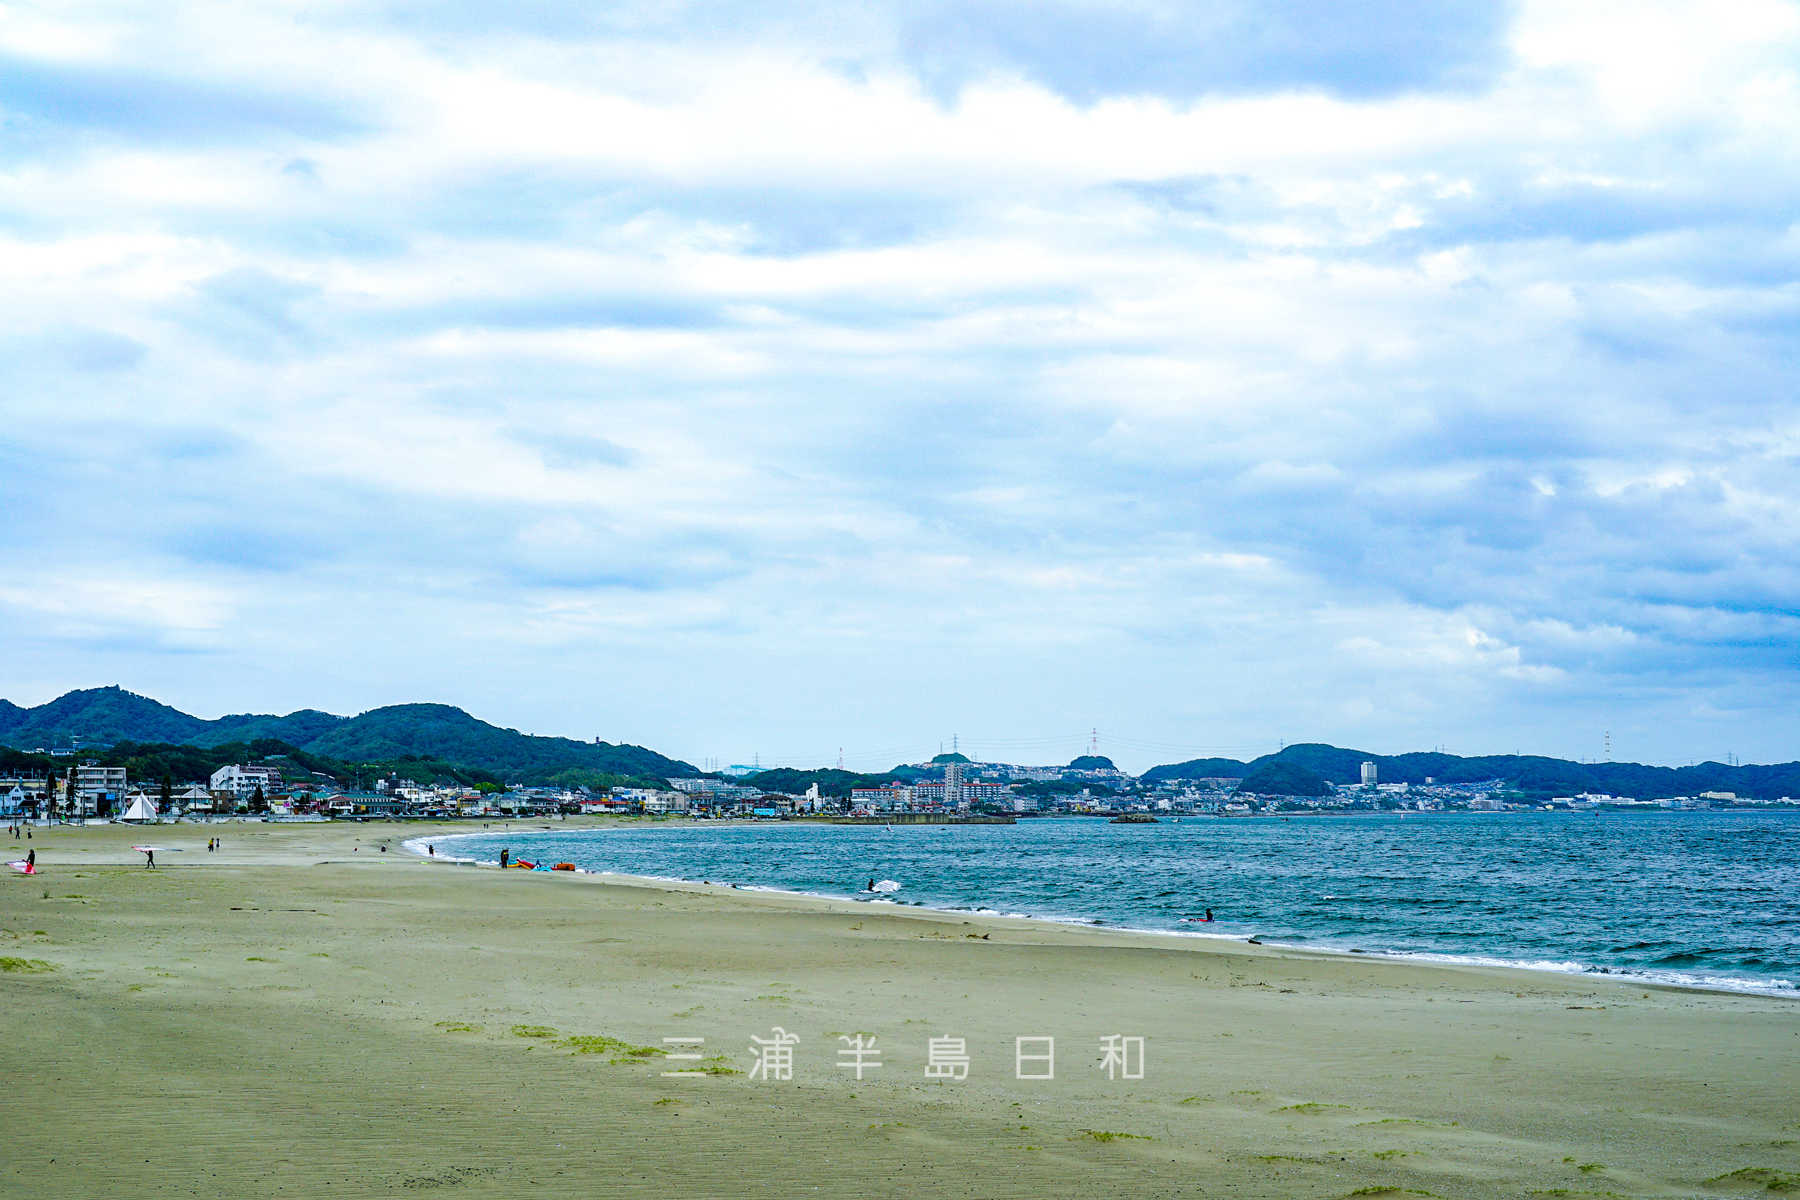 三浦海岸 関東屈指のメジャーなファミリー向けビーチ